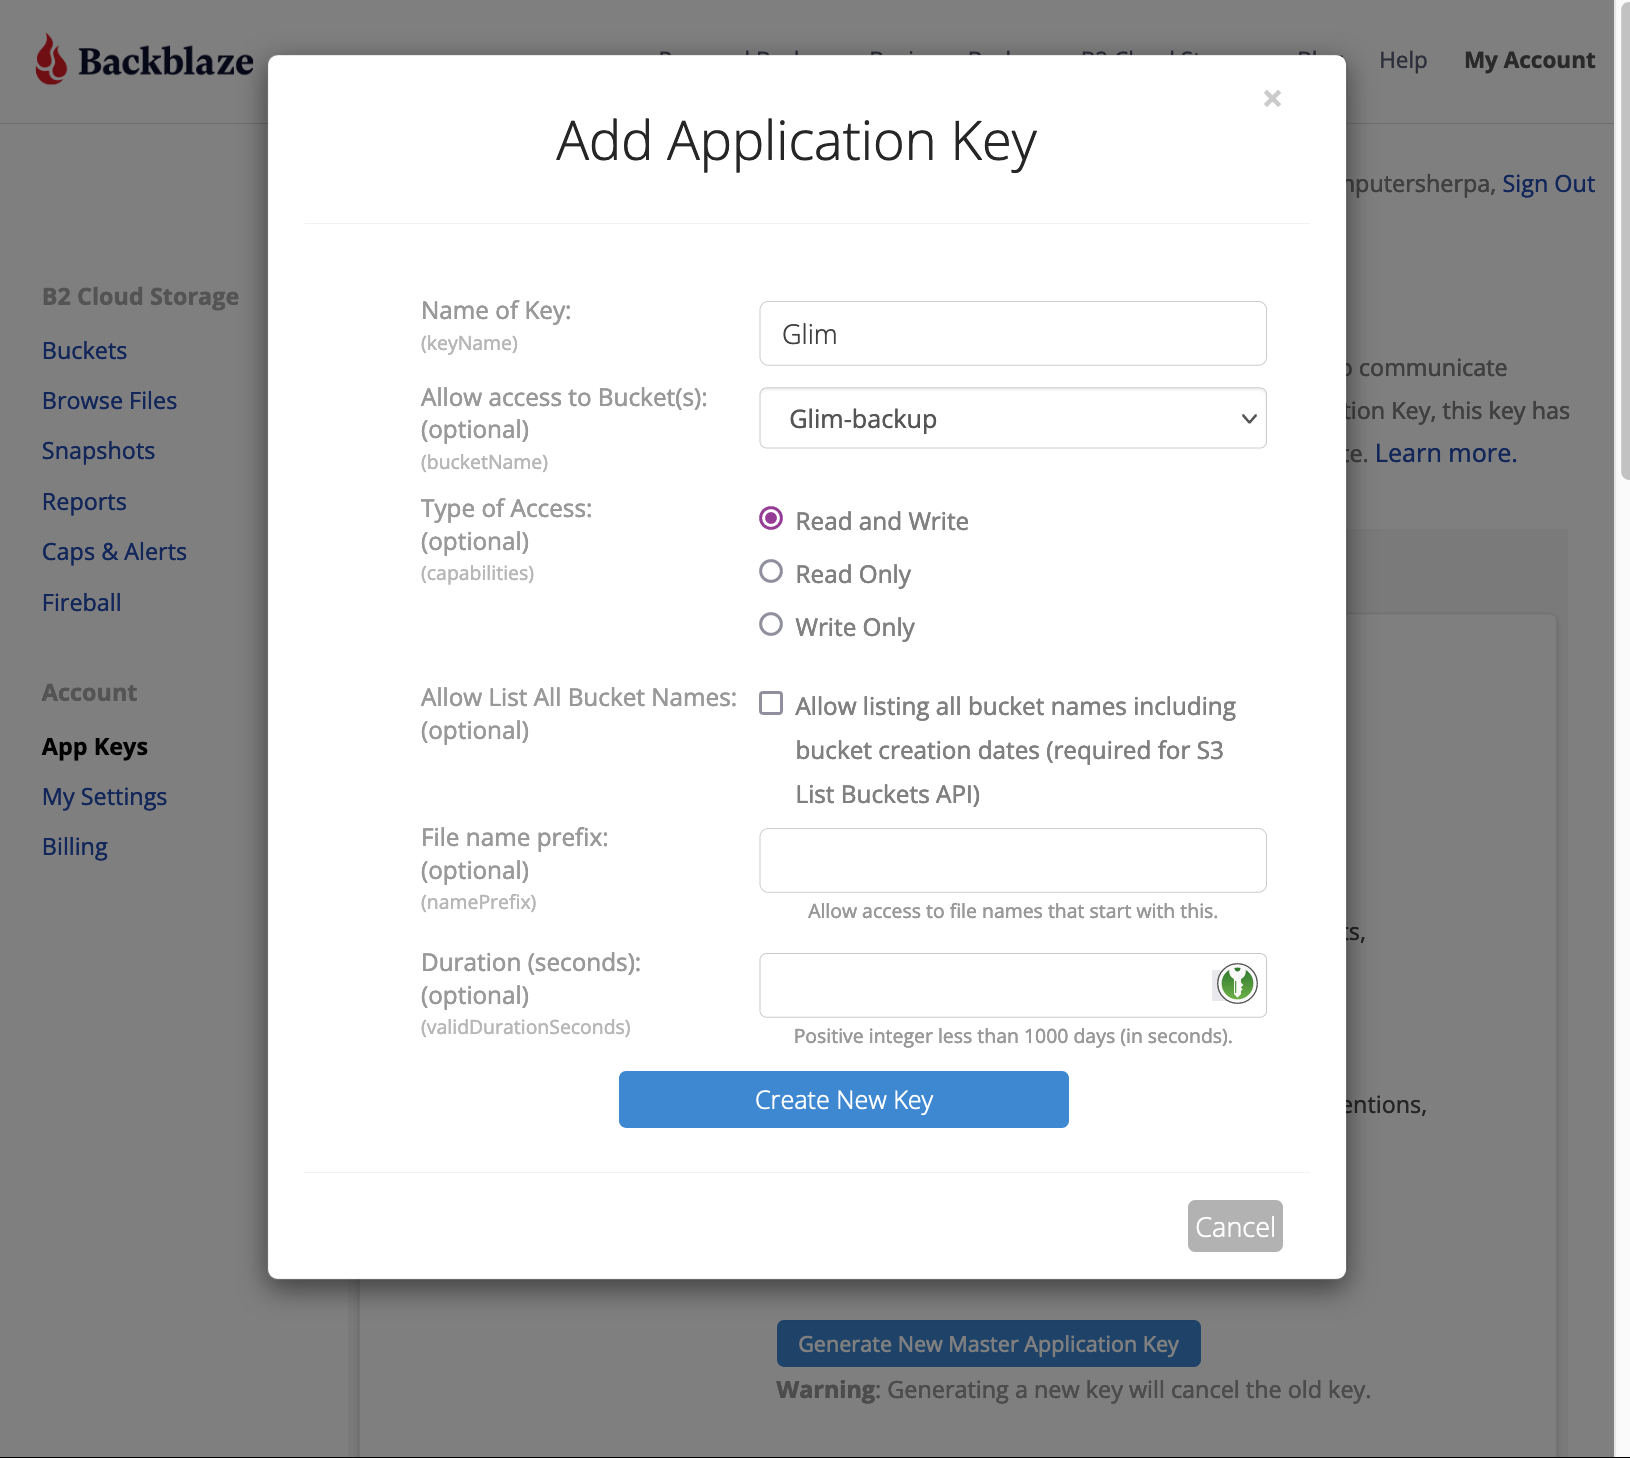 Backblaze's 'Add Application Key' screen